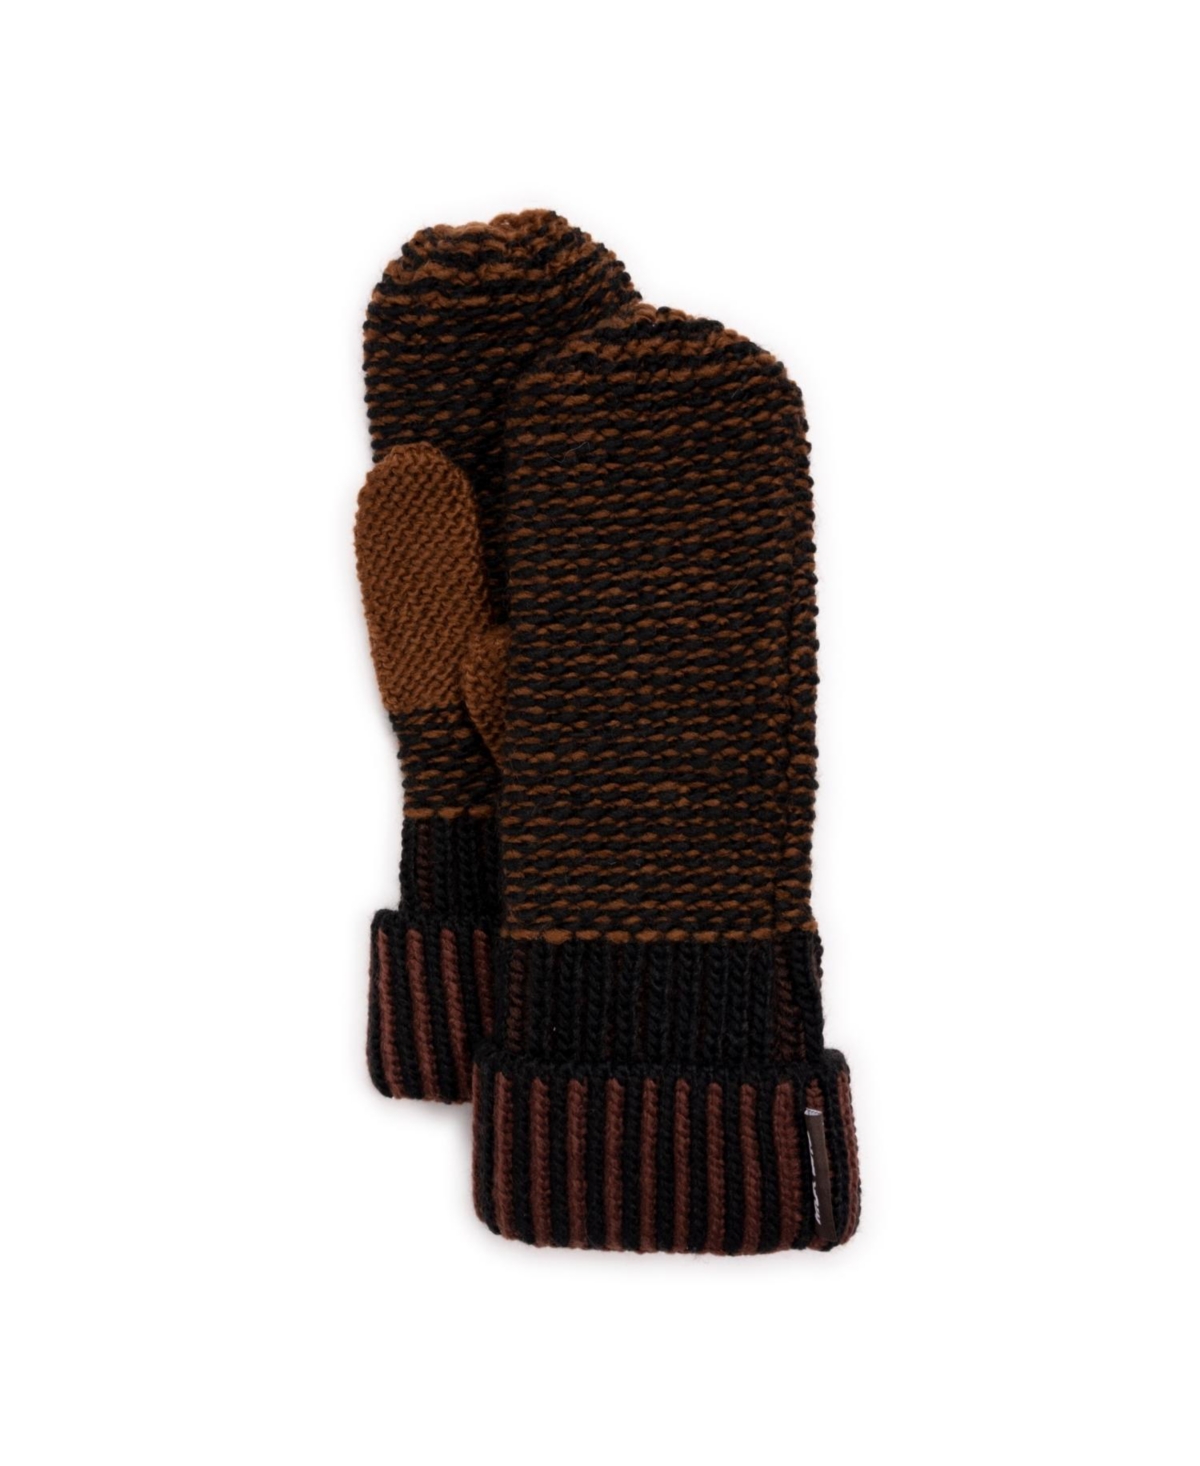 Women's Textured Mitten Gloves - Dark chocolate